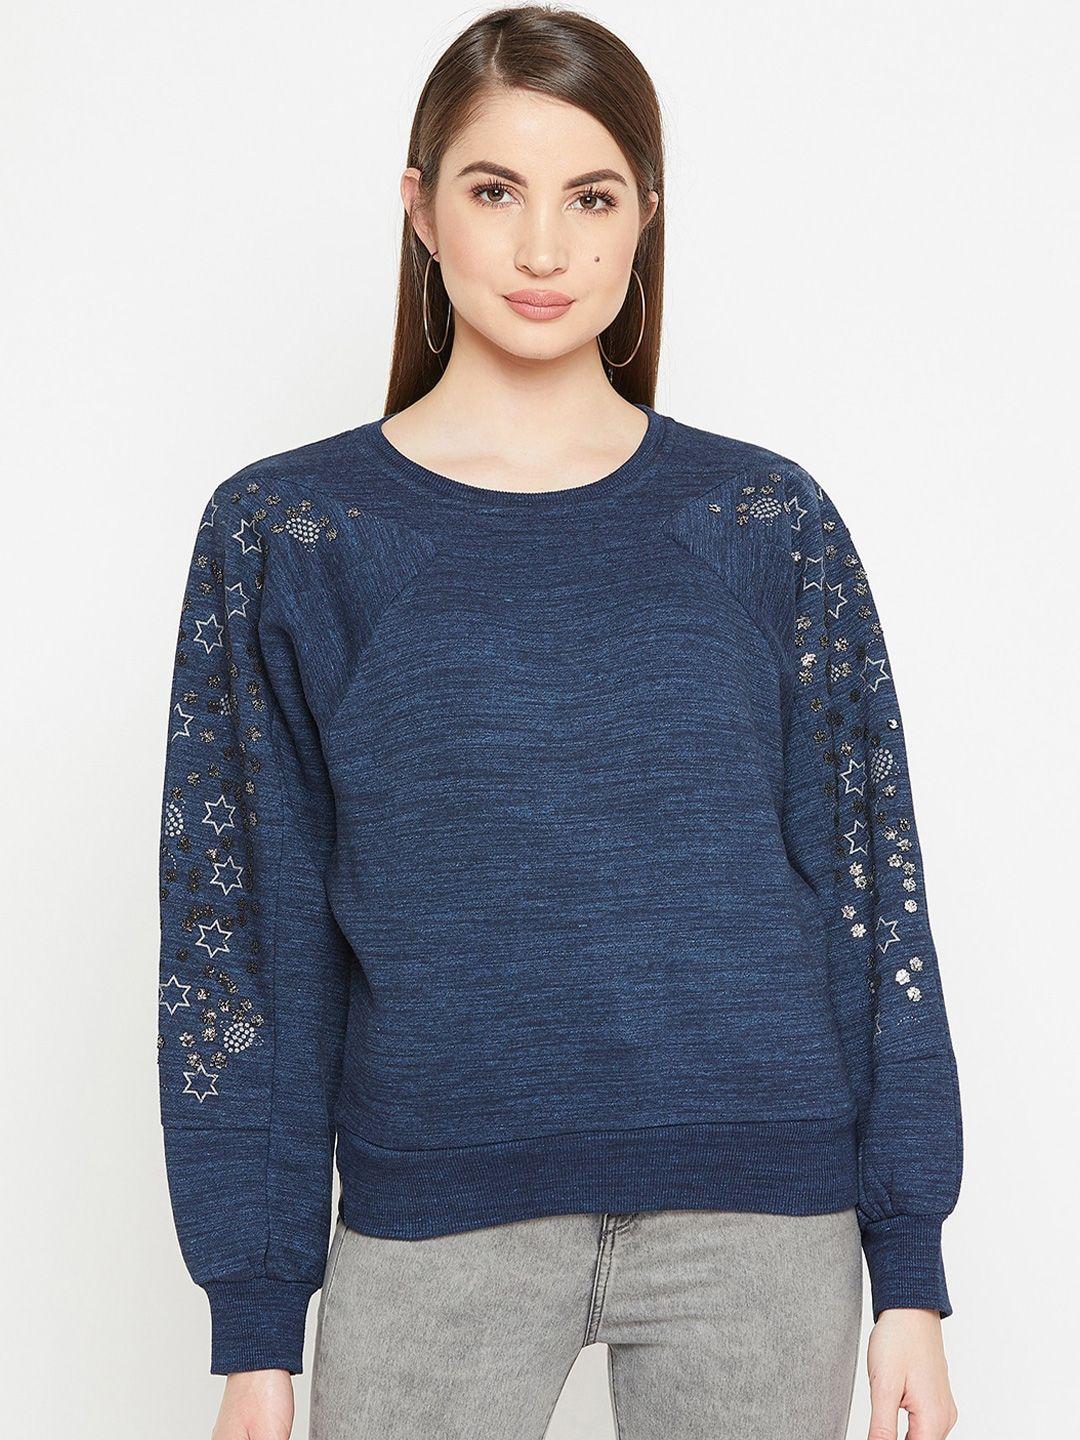 carlton-london-women-sweatshirt